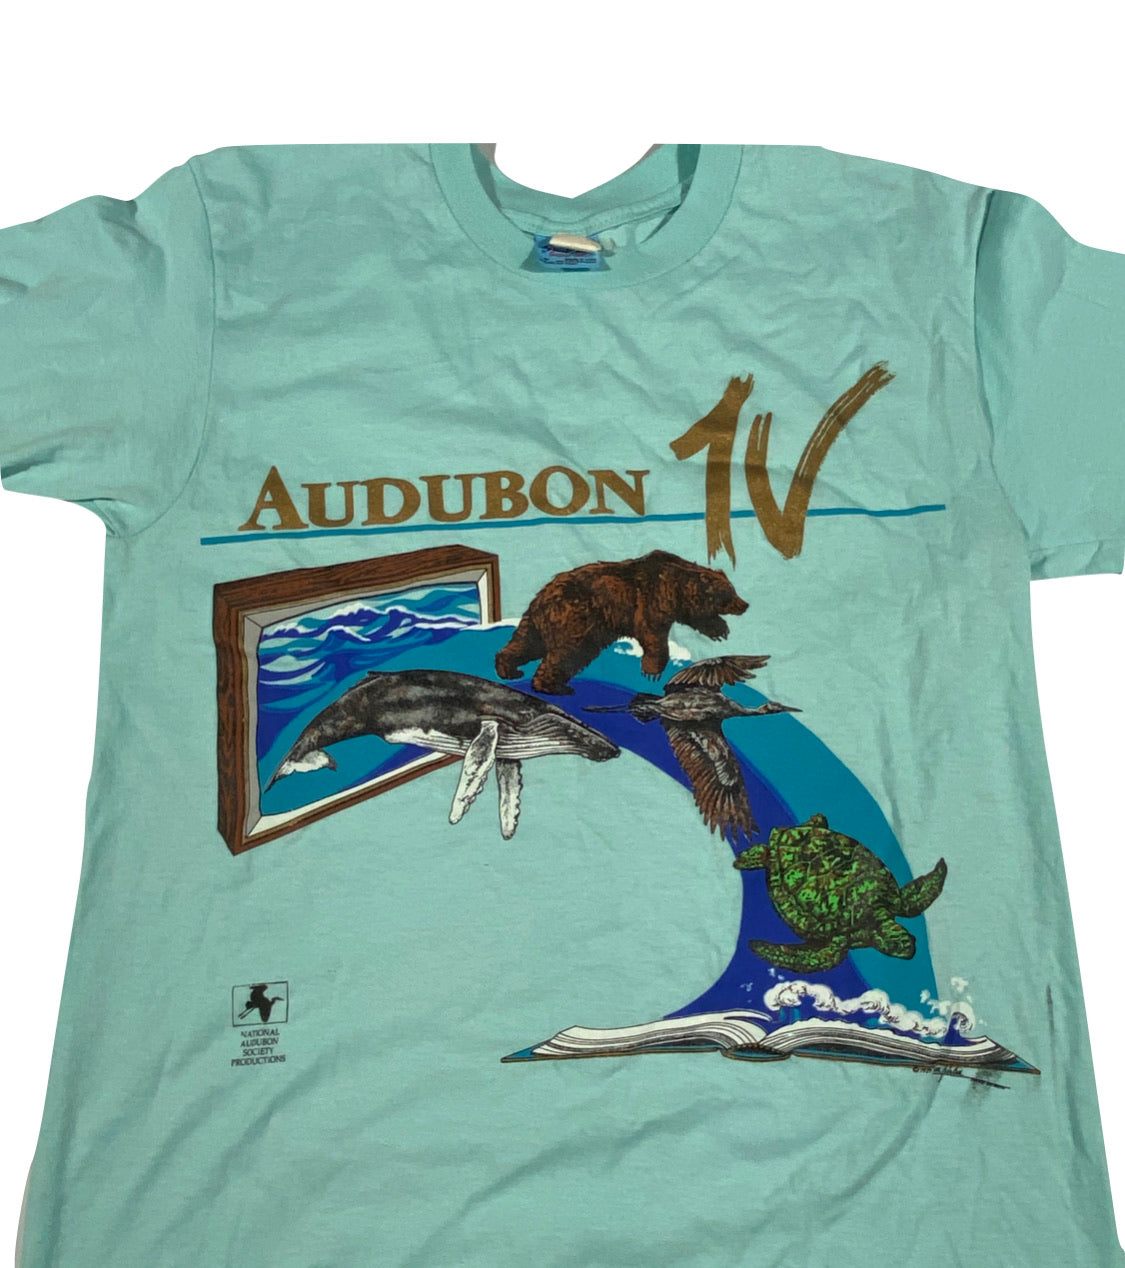 80s Audubon tee S/M